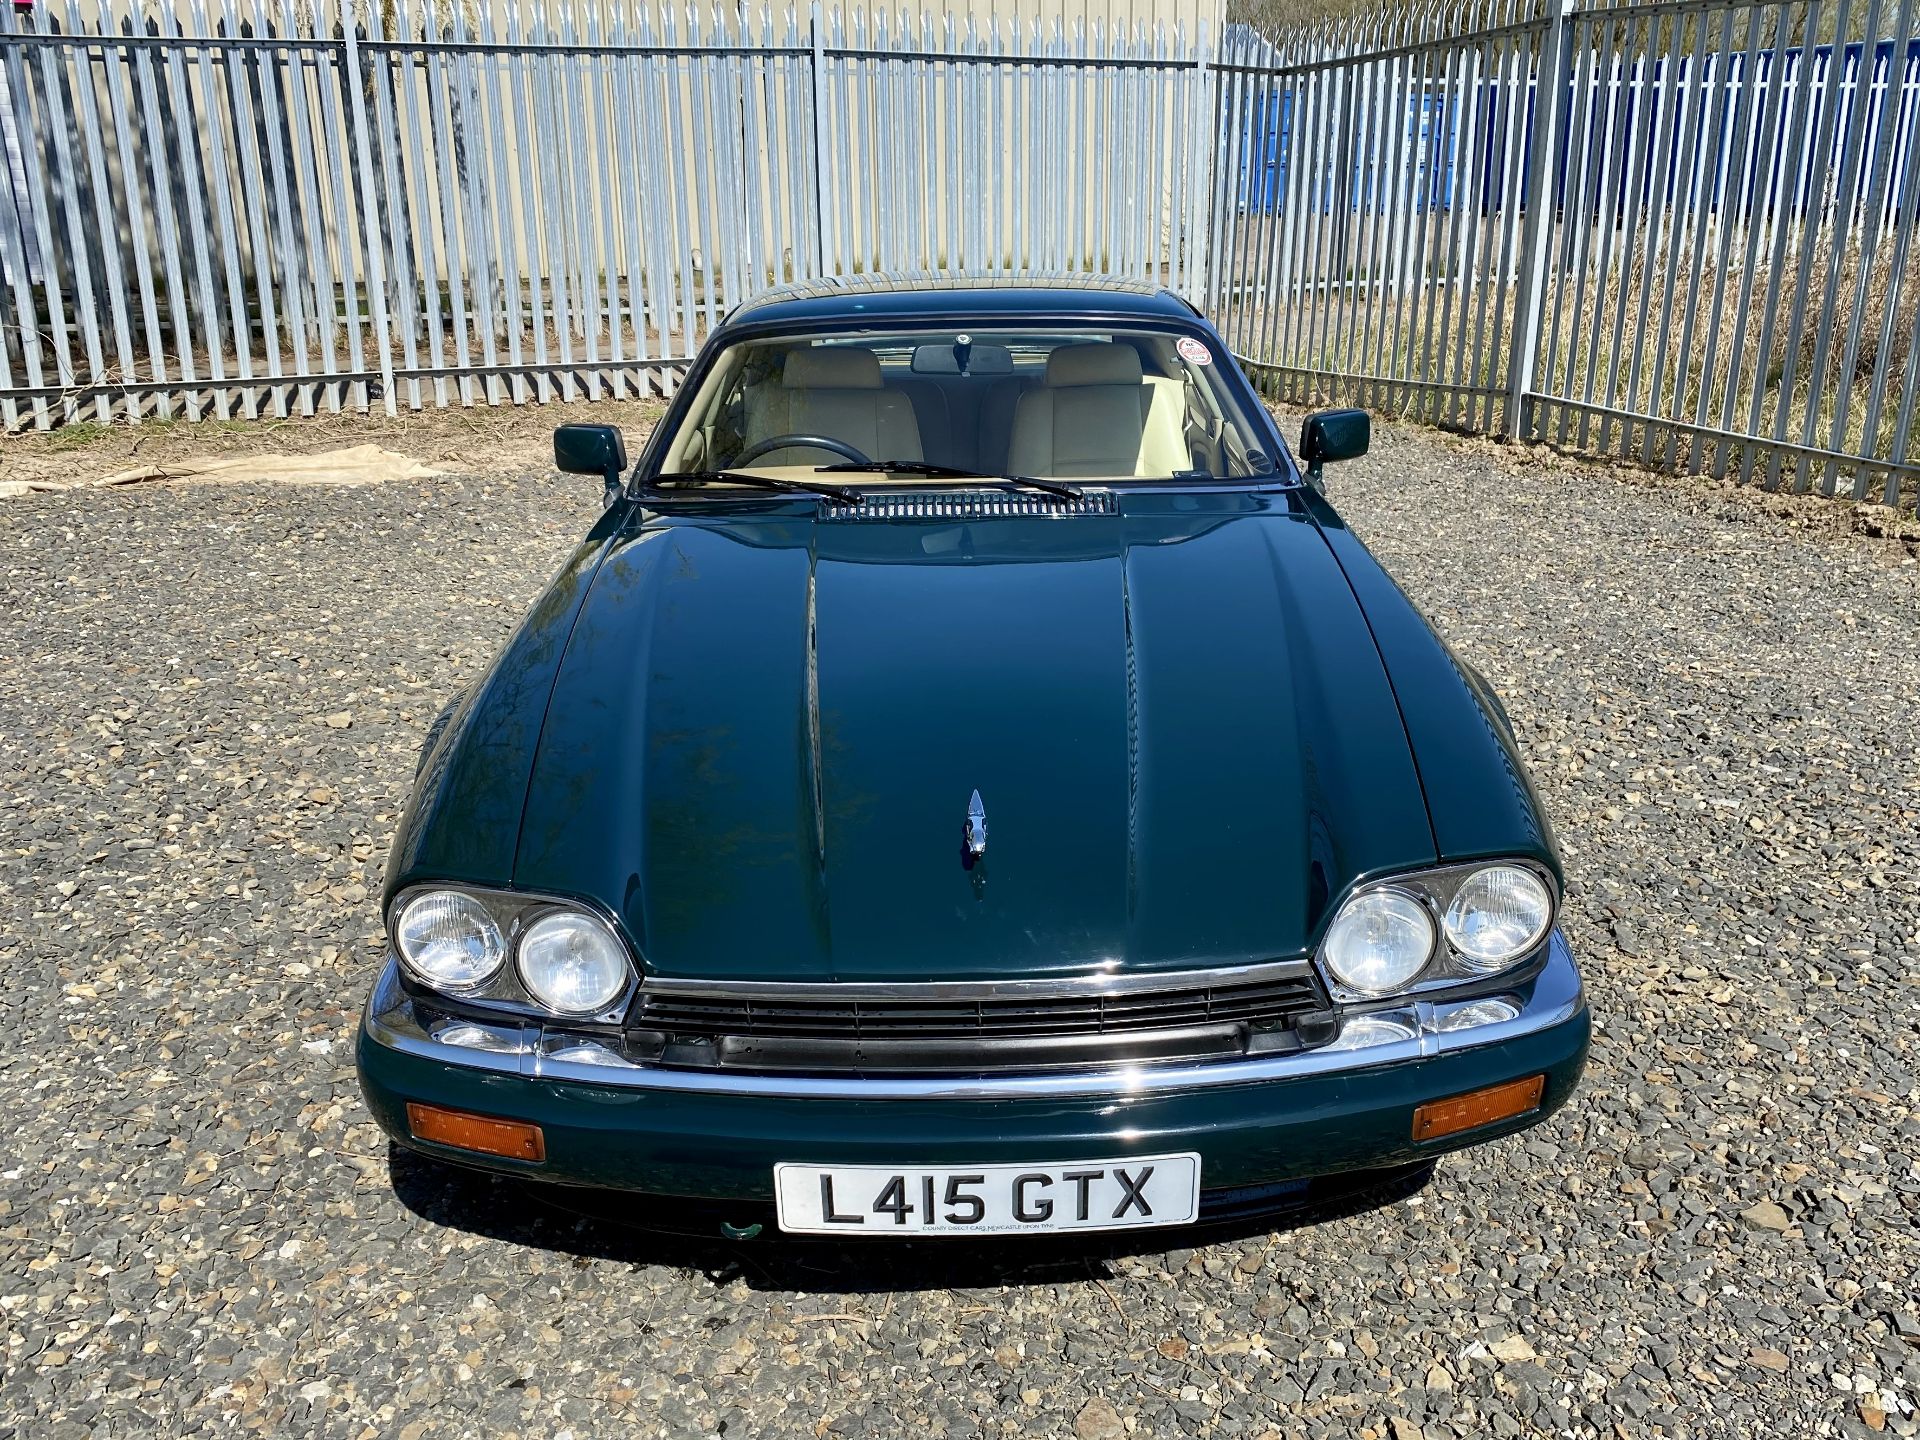 Jaguar XJS coupe - Image 17 of 64